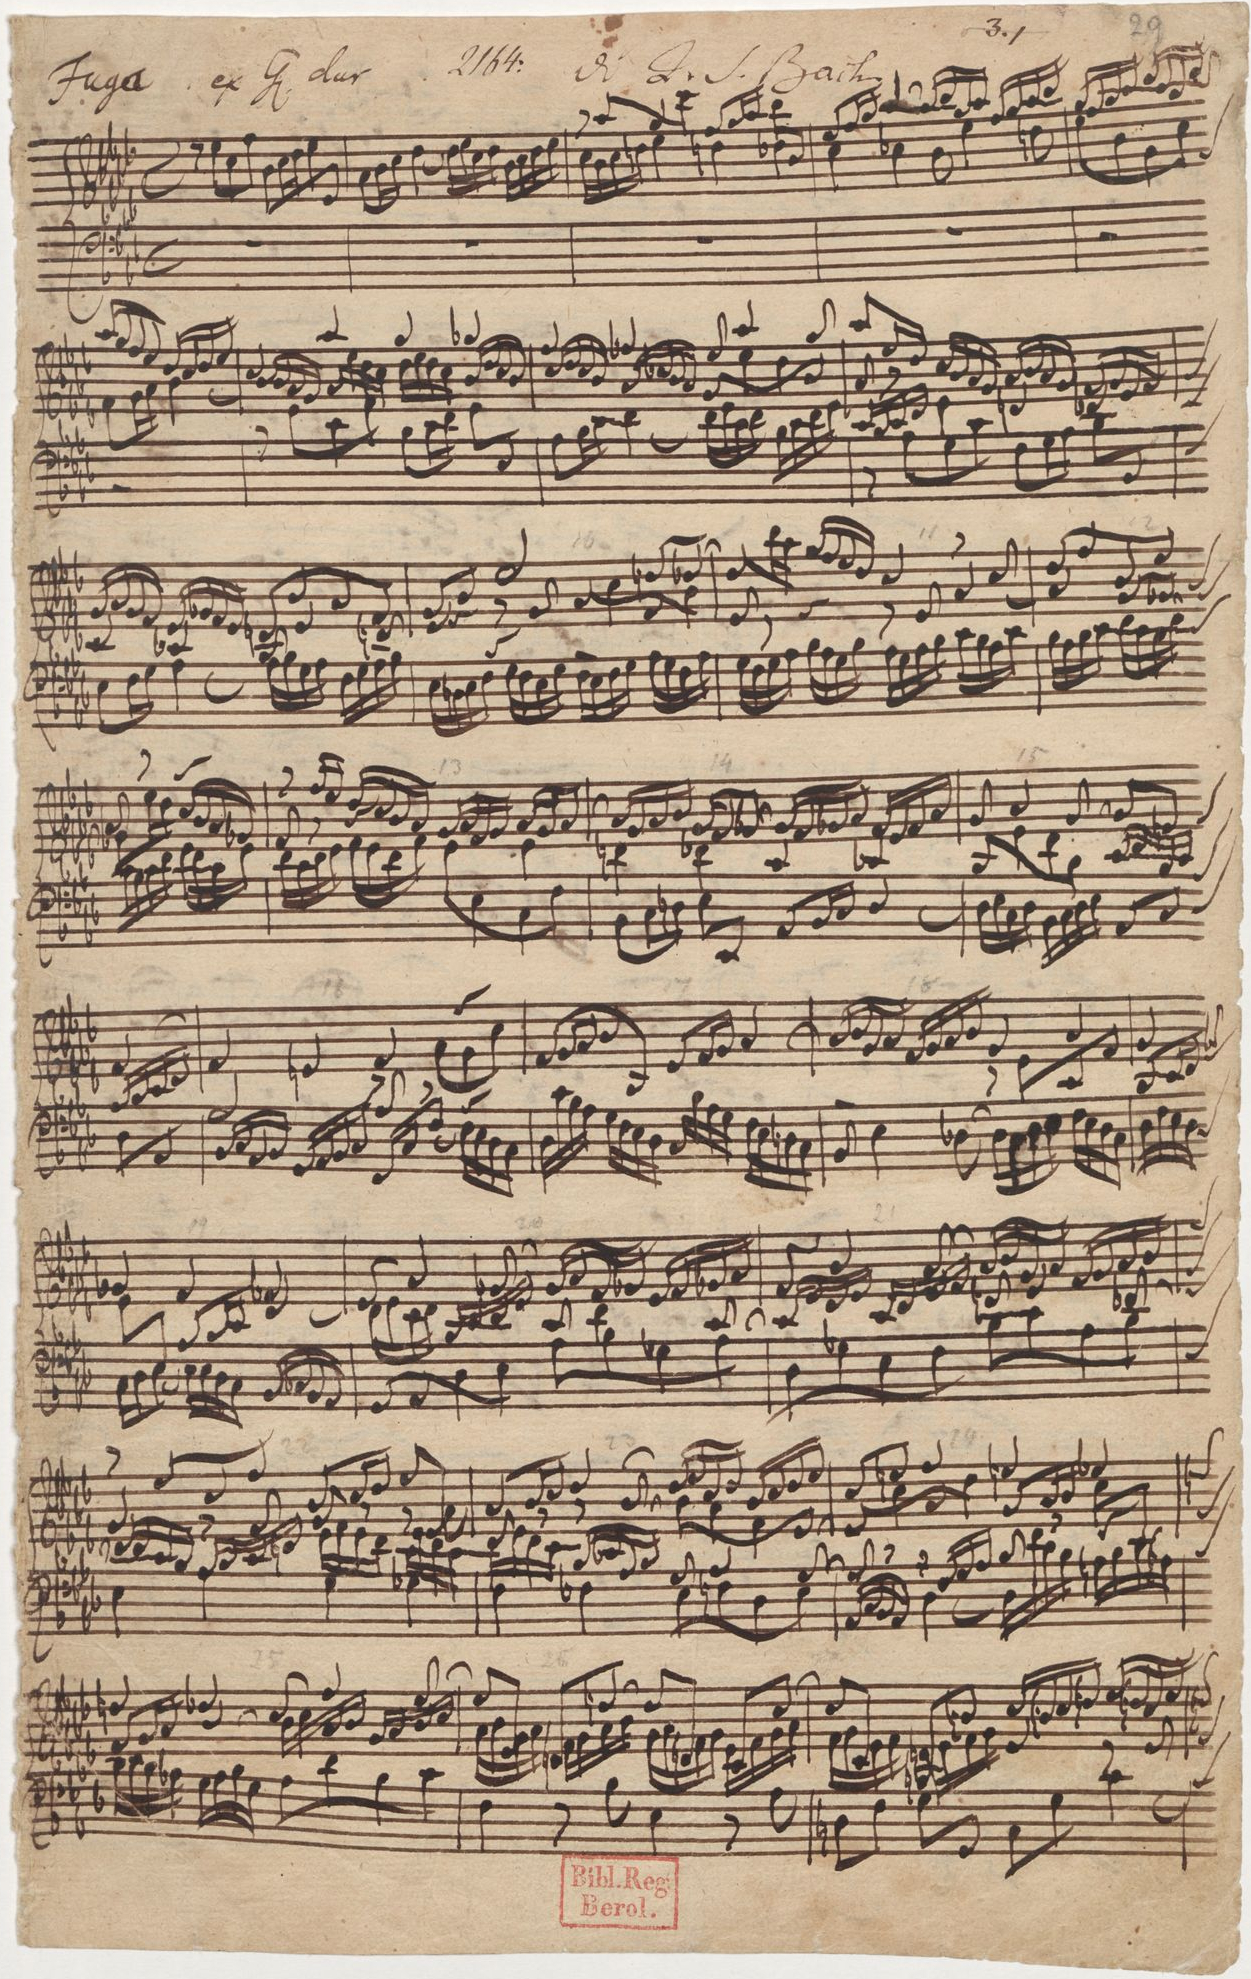 Fig. 1 - Pagina autografa della fuga in Lab maggiore dal secondo libro del Clavicembalo Ben Temperato di Johann S. Bach (1685-1750), una delle prime opere musicali a fare uso di una scala temperata - Crediti: libreria di stato di Berlino, immagine di pubblico dominio.